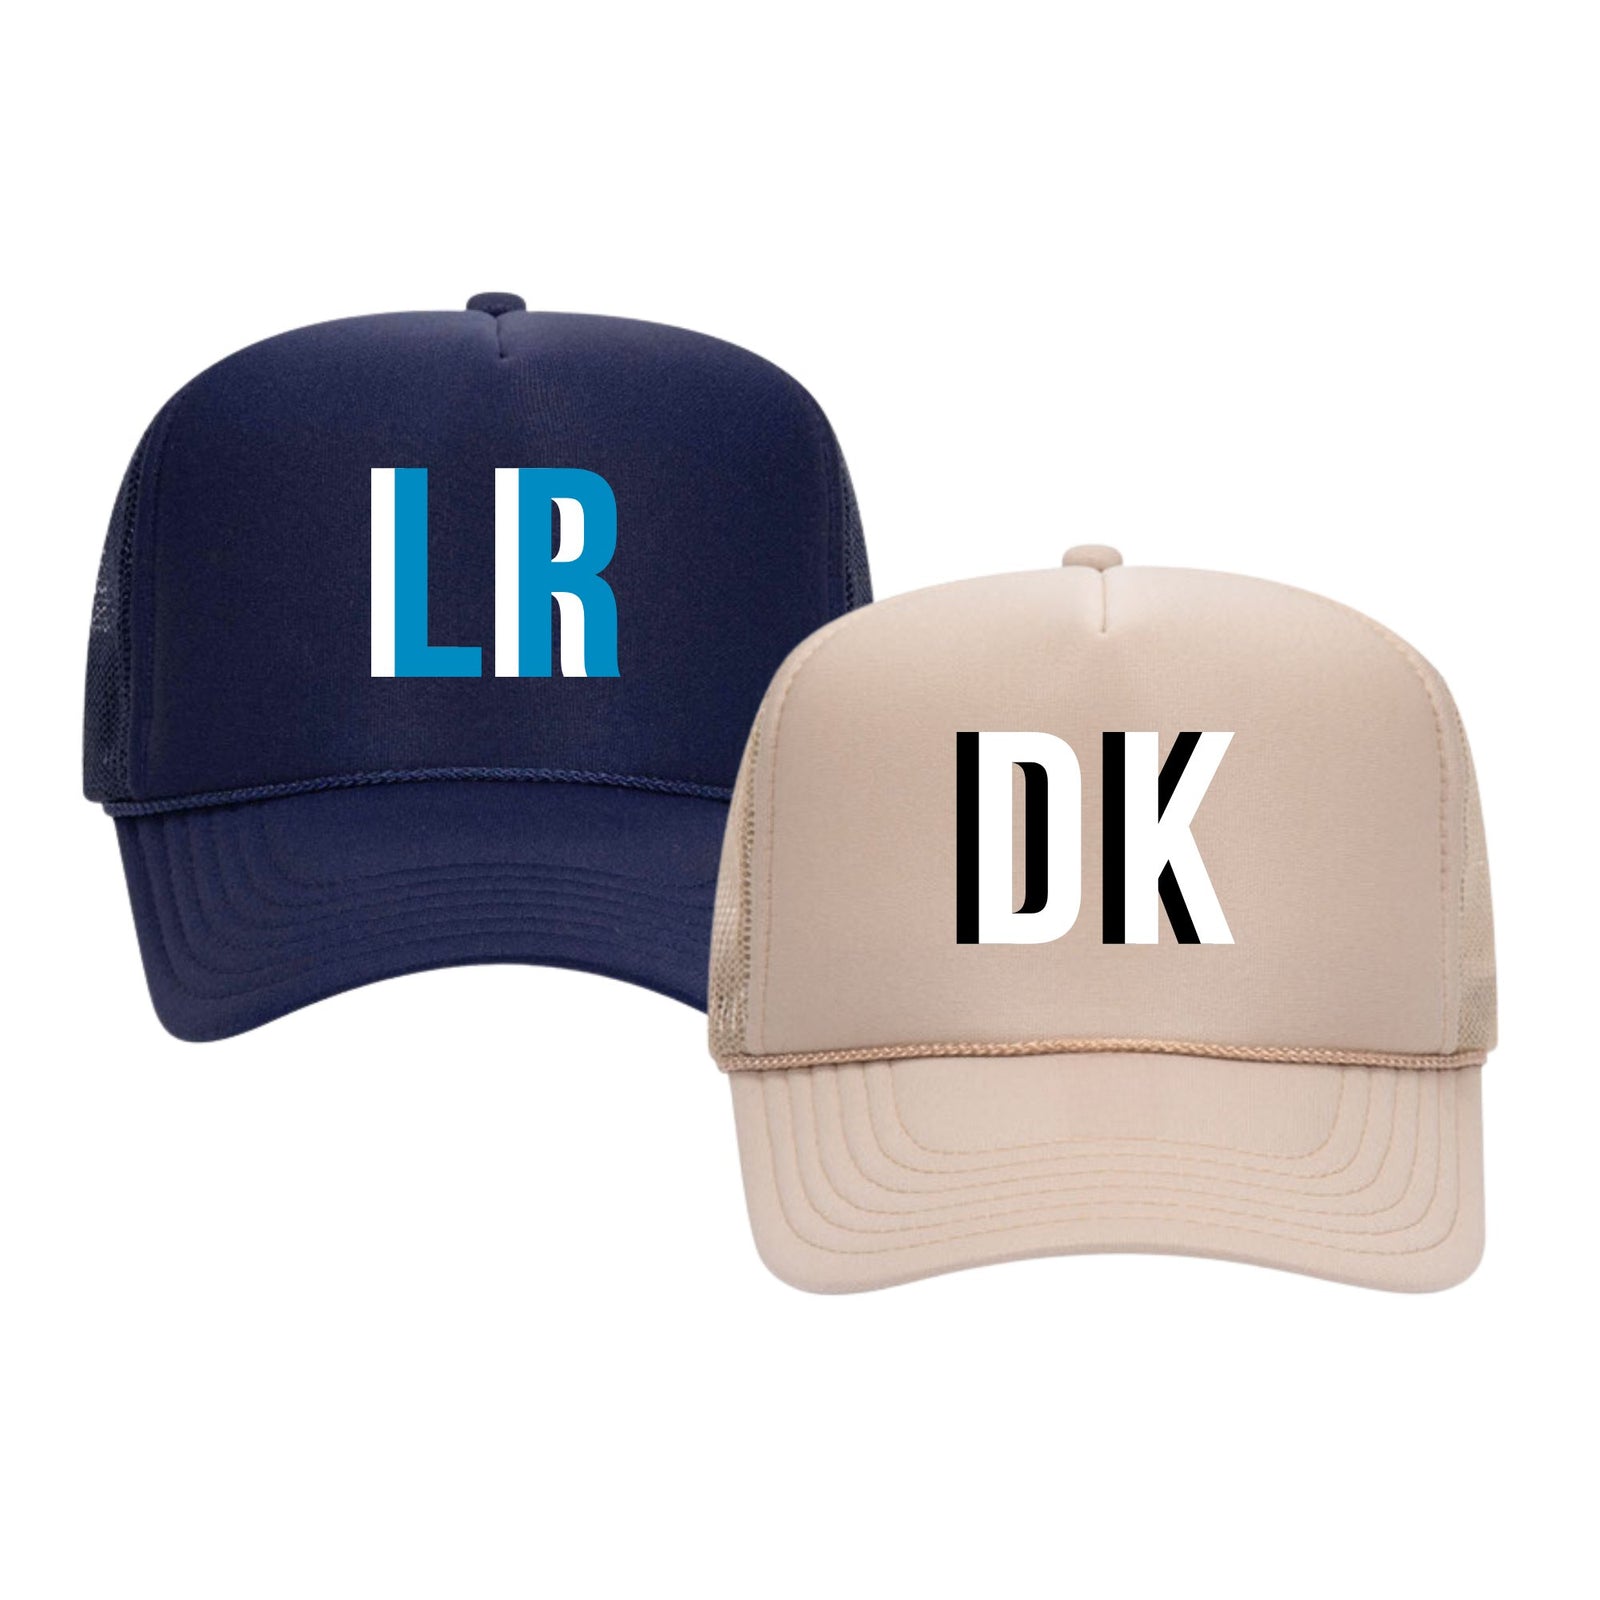 Hats & Hair Accessories  Preppy accessories, Pink trucker hat, Trucker hat